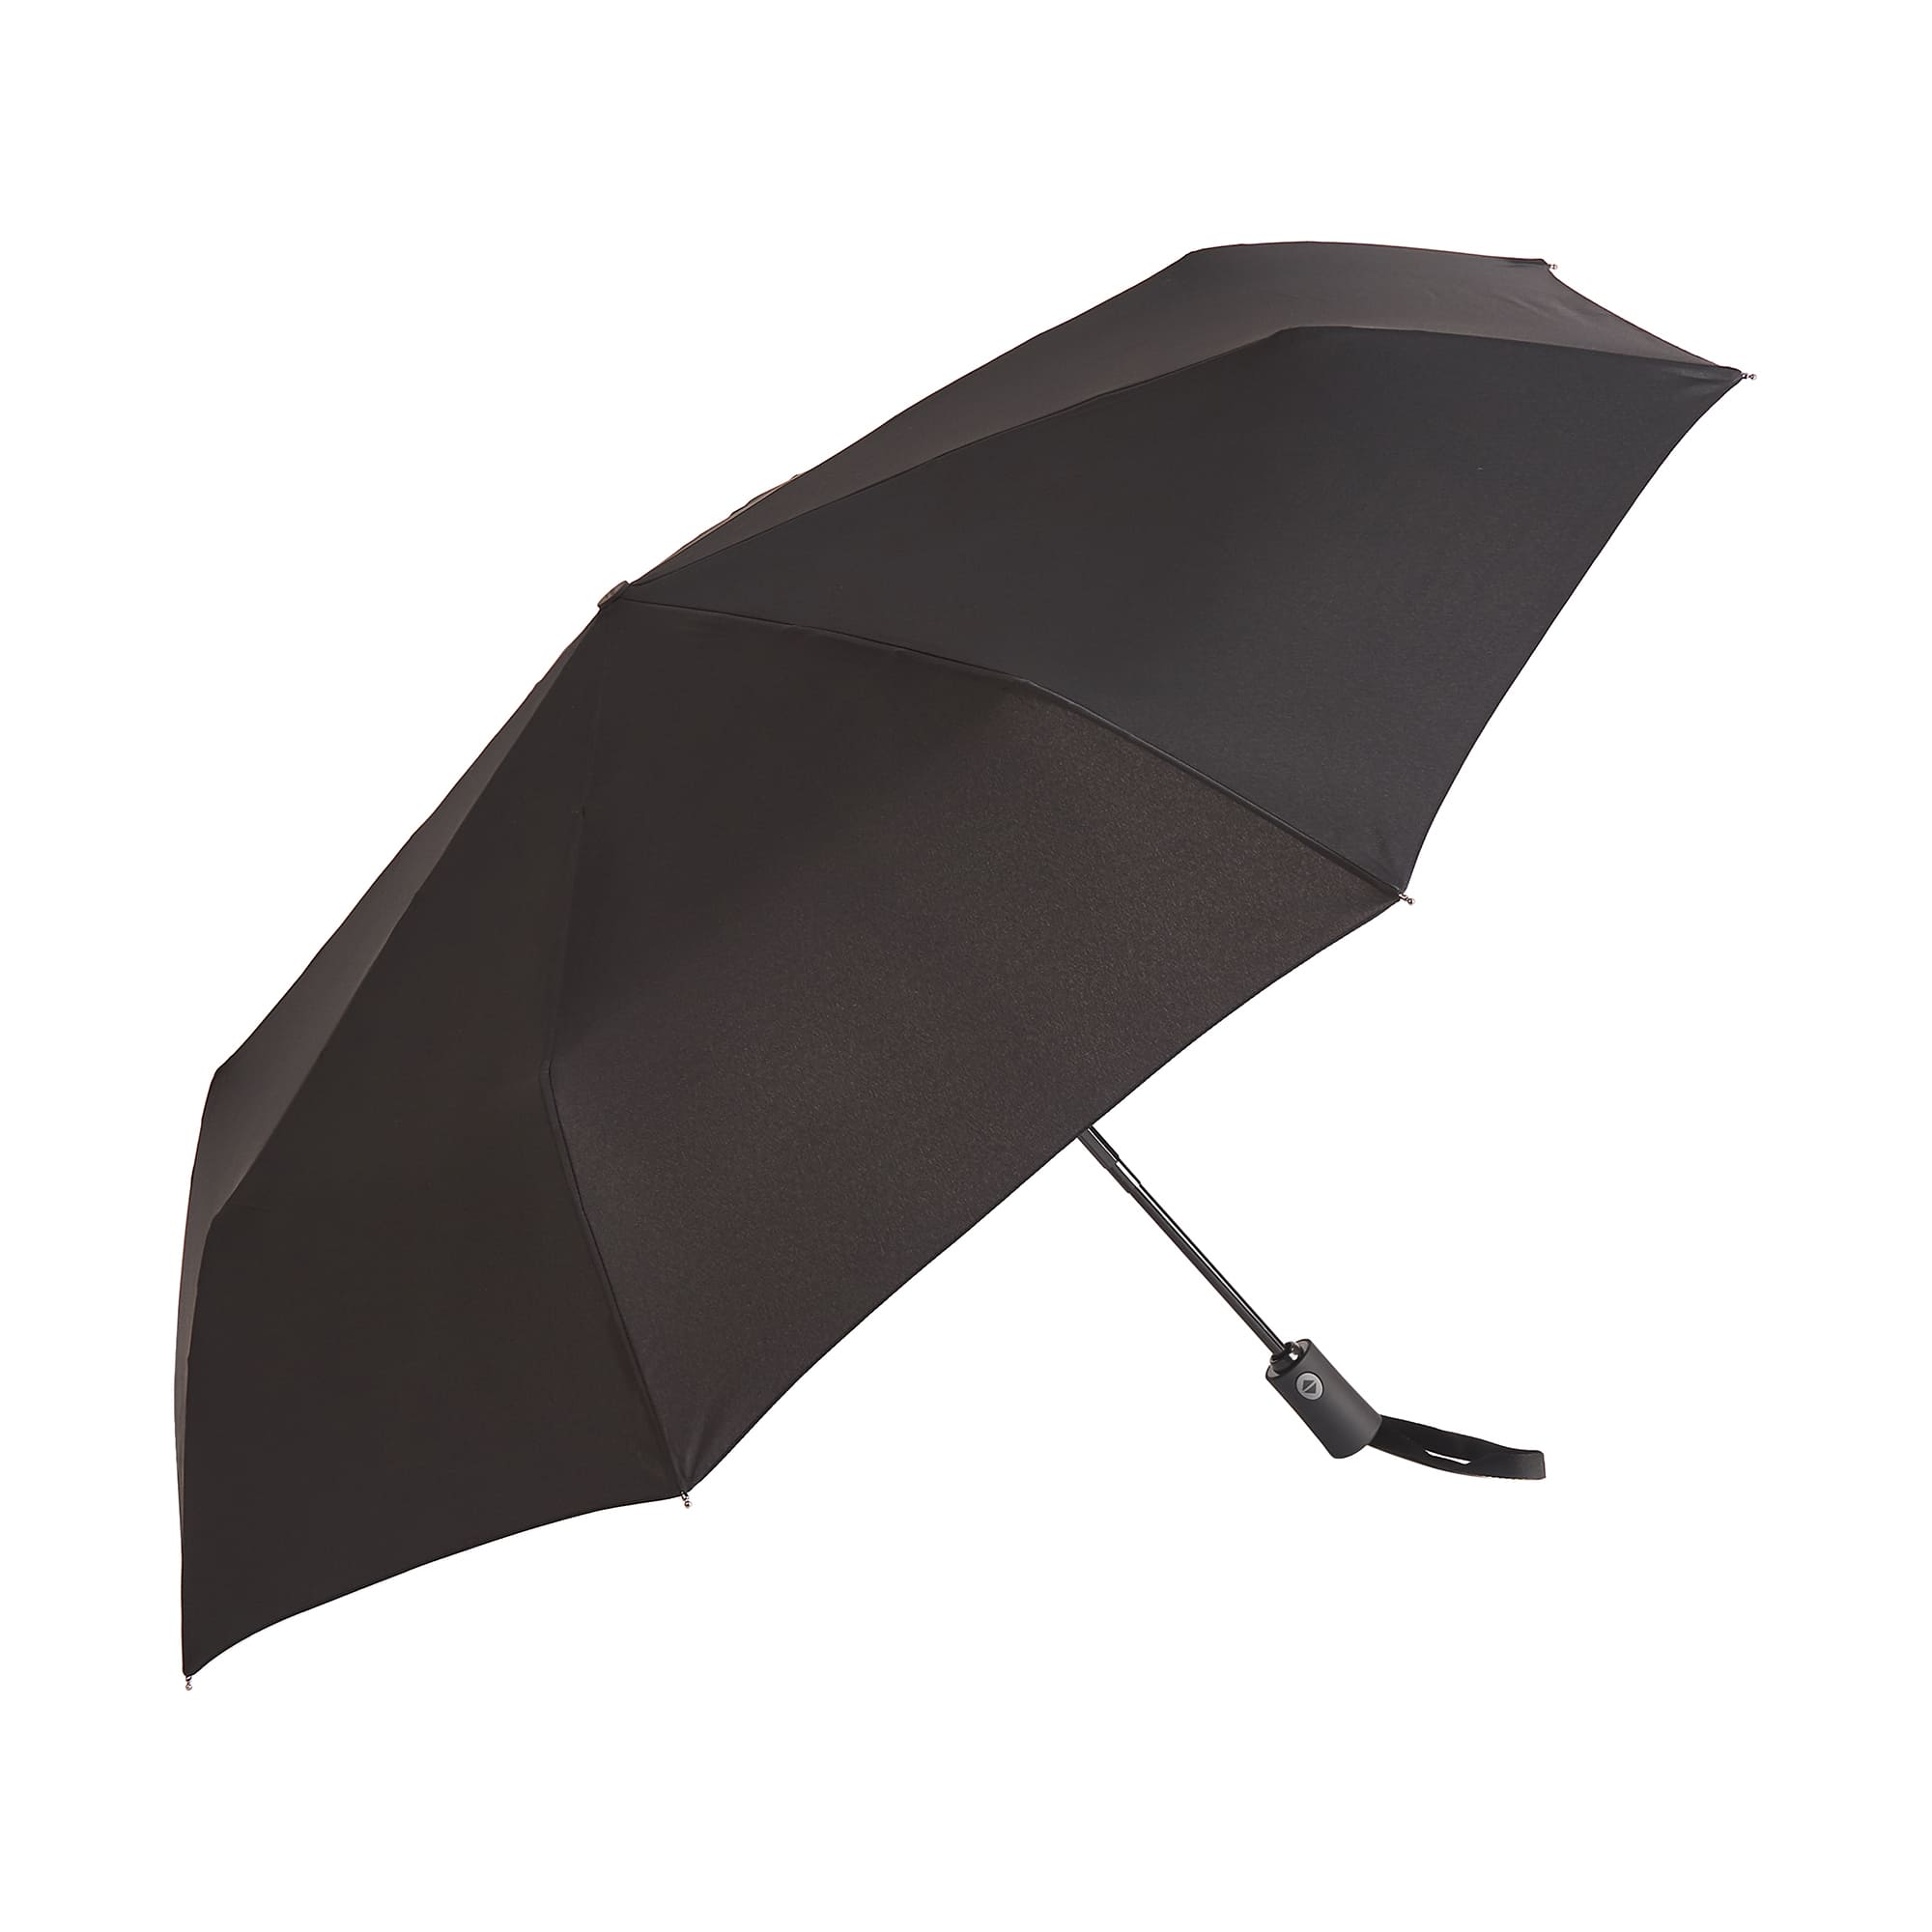 Др.Коффер E421 зонт, цвет черный